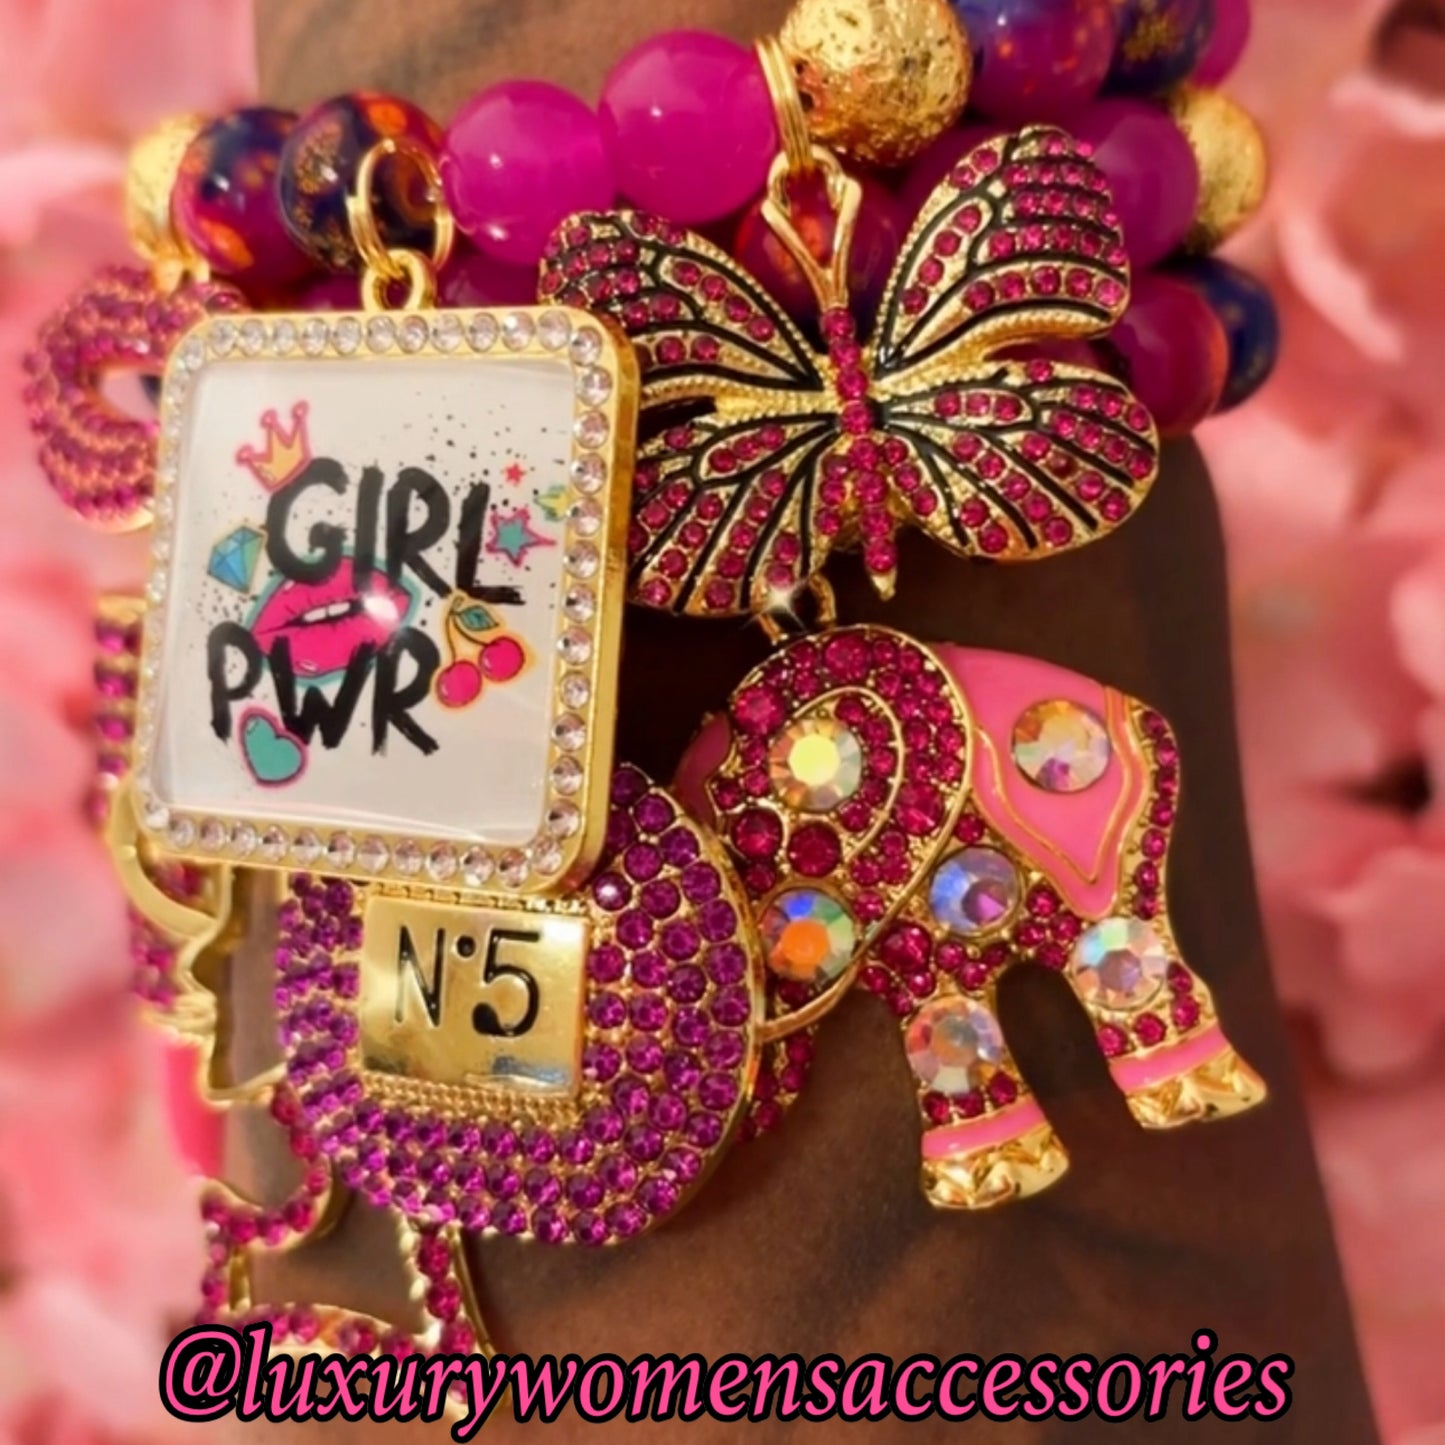 “Girl Power” Beaded Bracelet Set( set of 3)